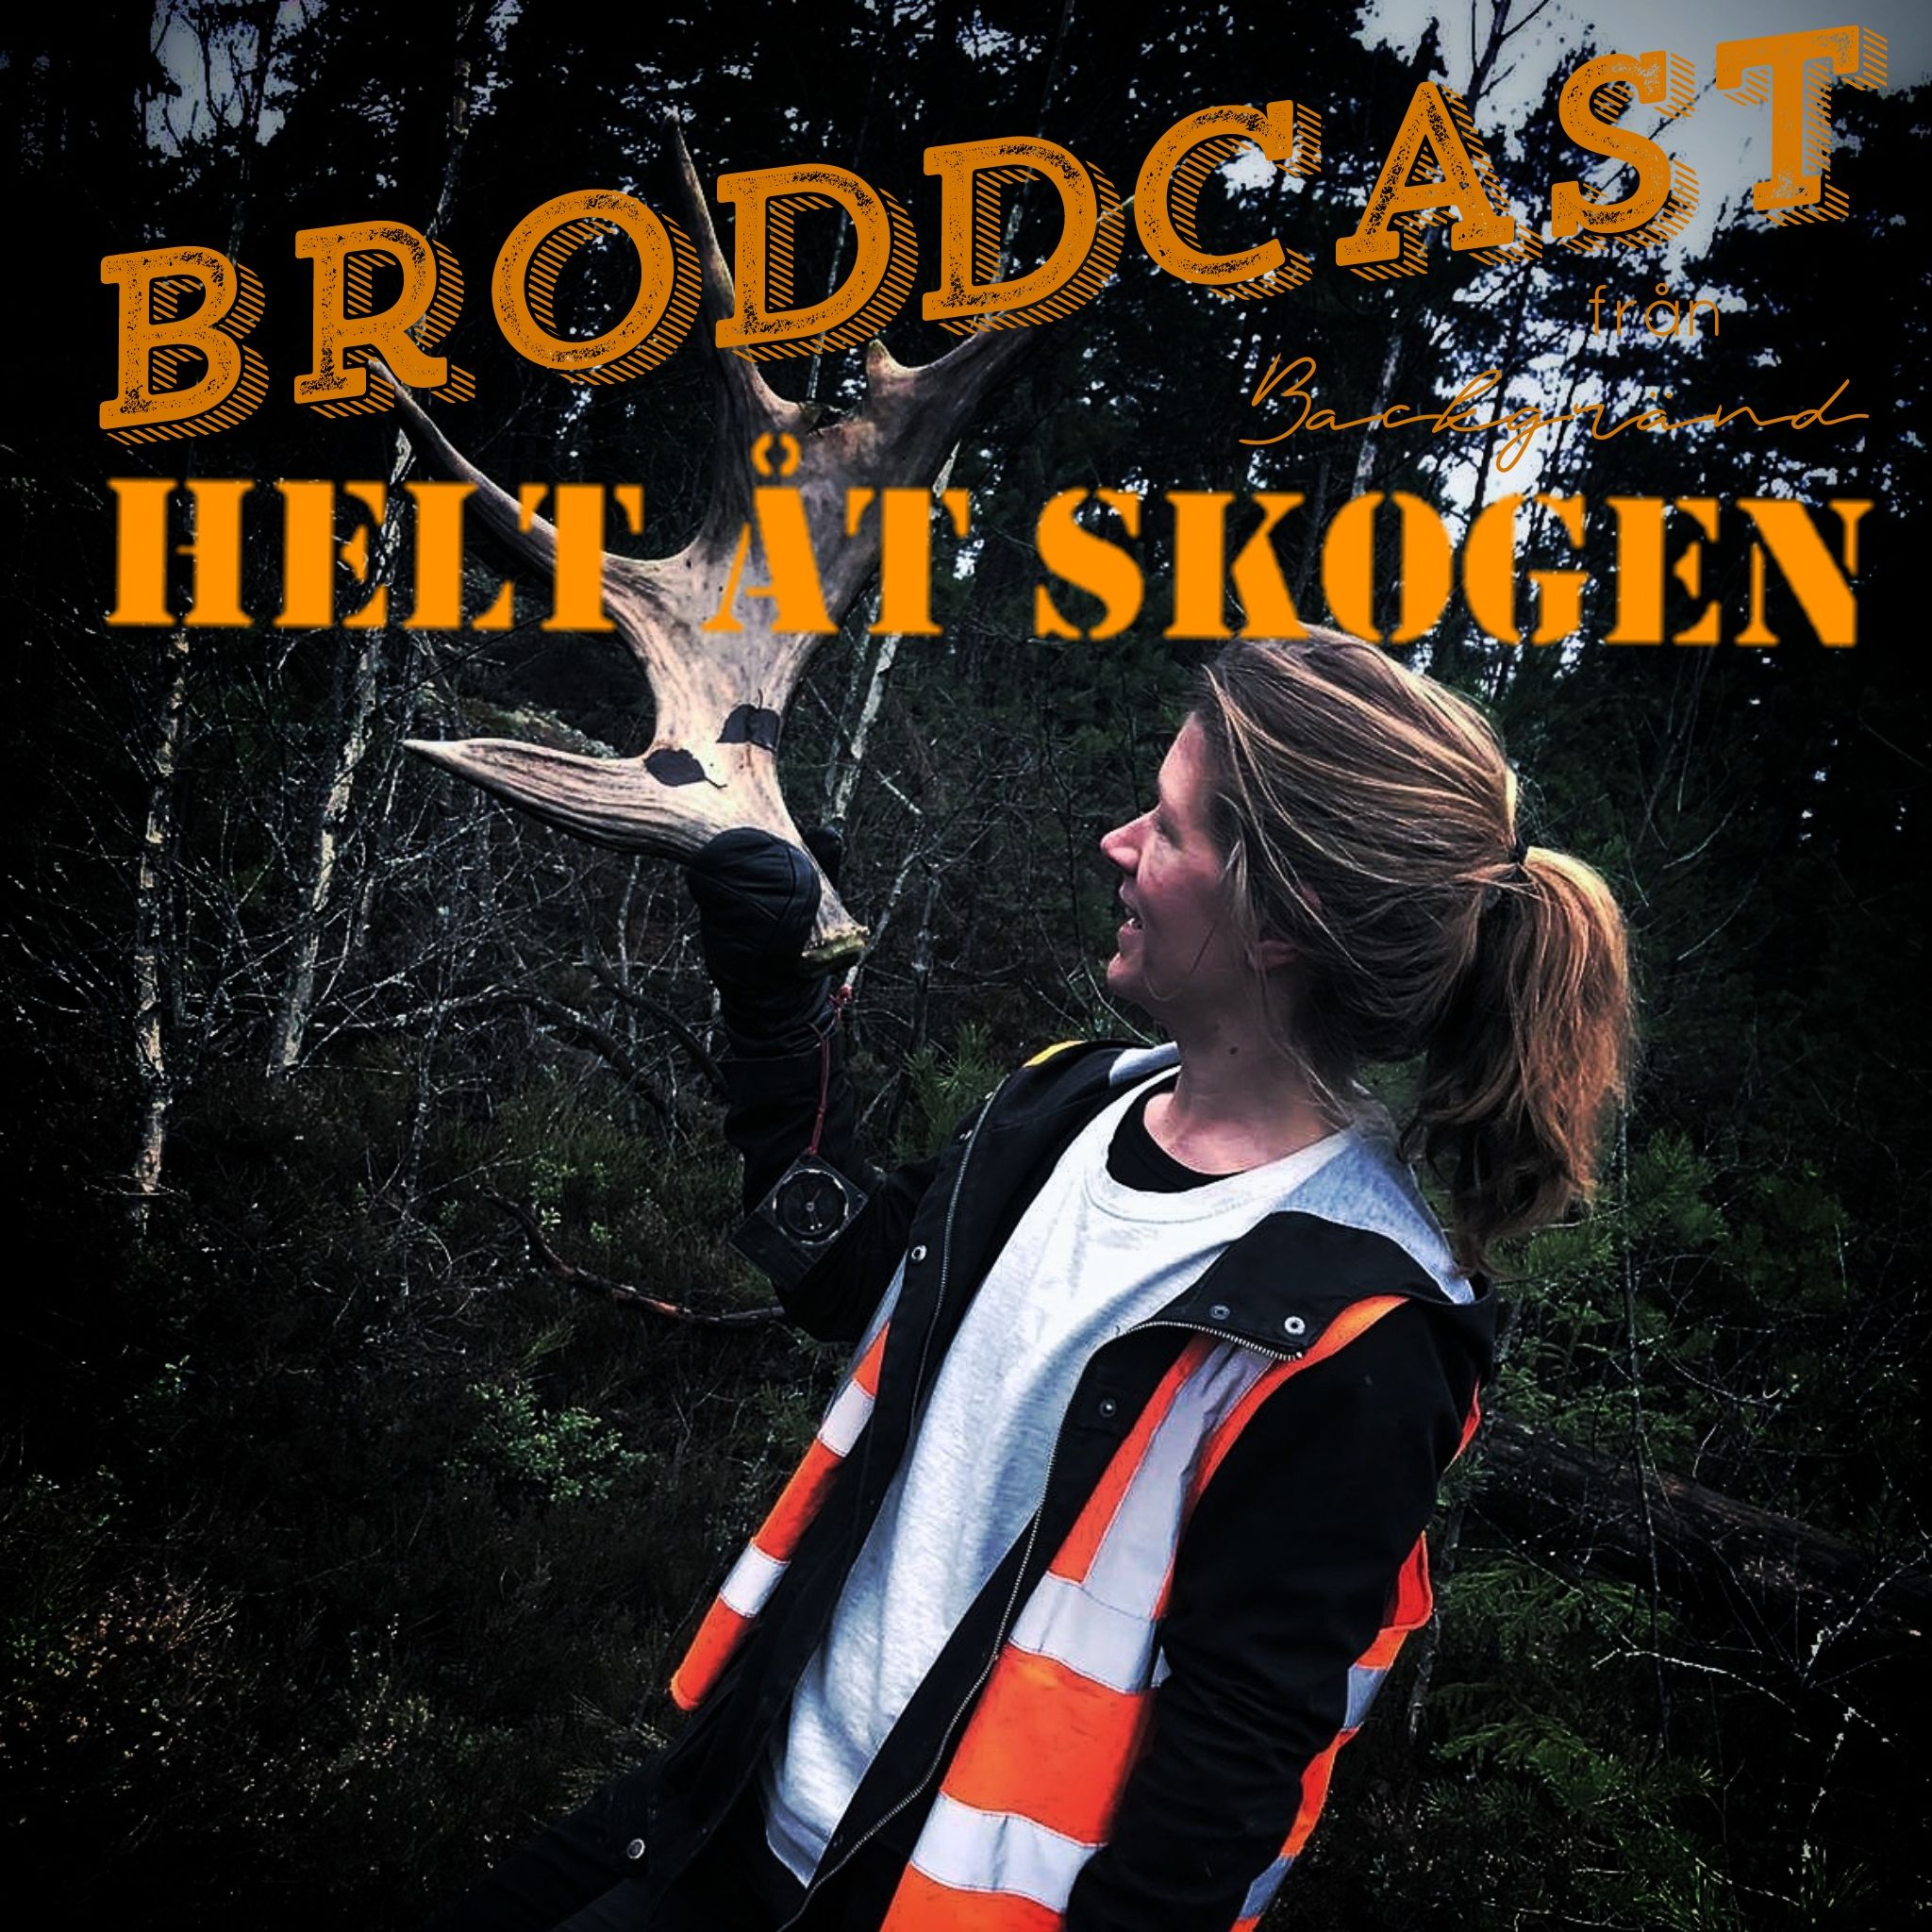 Broddcast från Backgränd HELT ÅT SKOGEN: Slakteriet